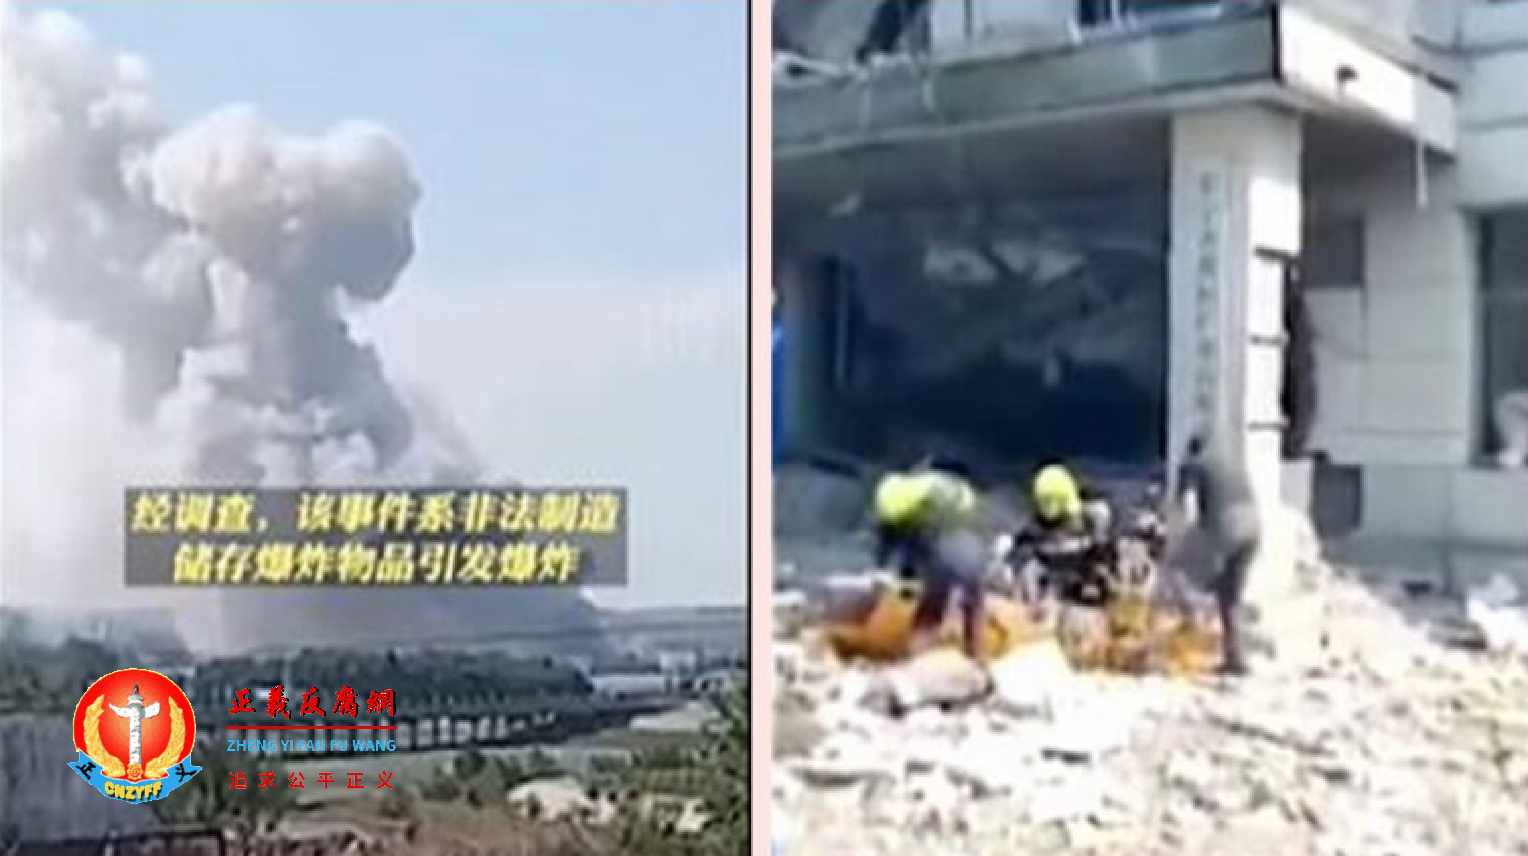 5月26日，黑龙江东宁市一栋大楼突发爆炸事故，至少8死4伤。.png